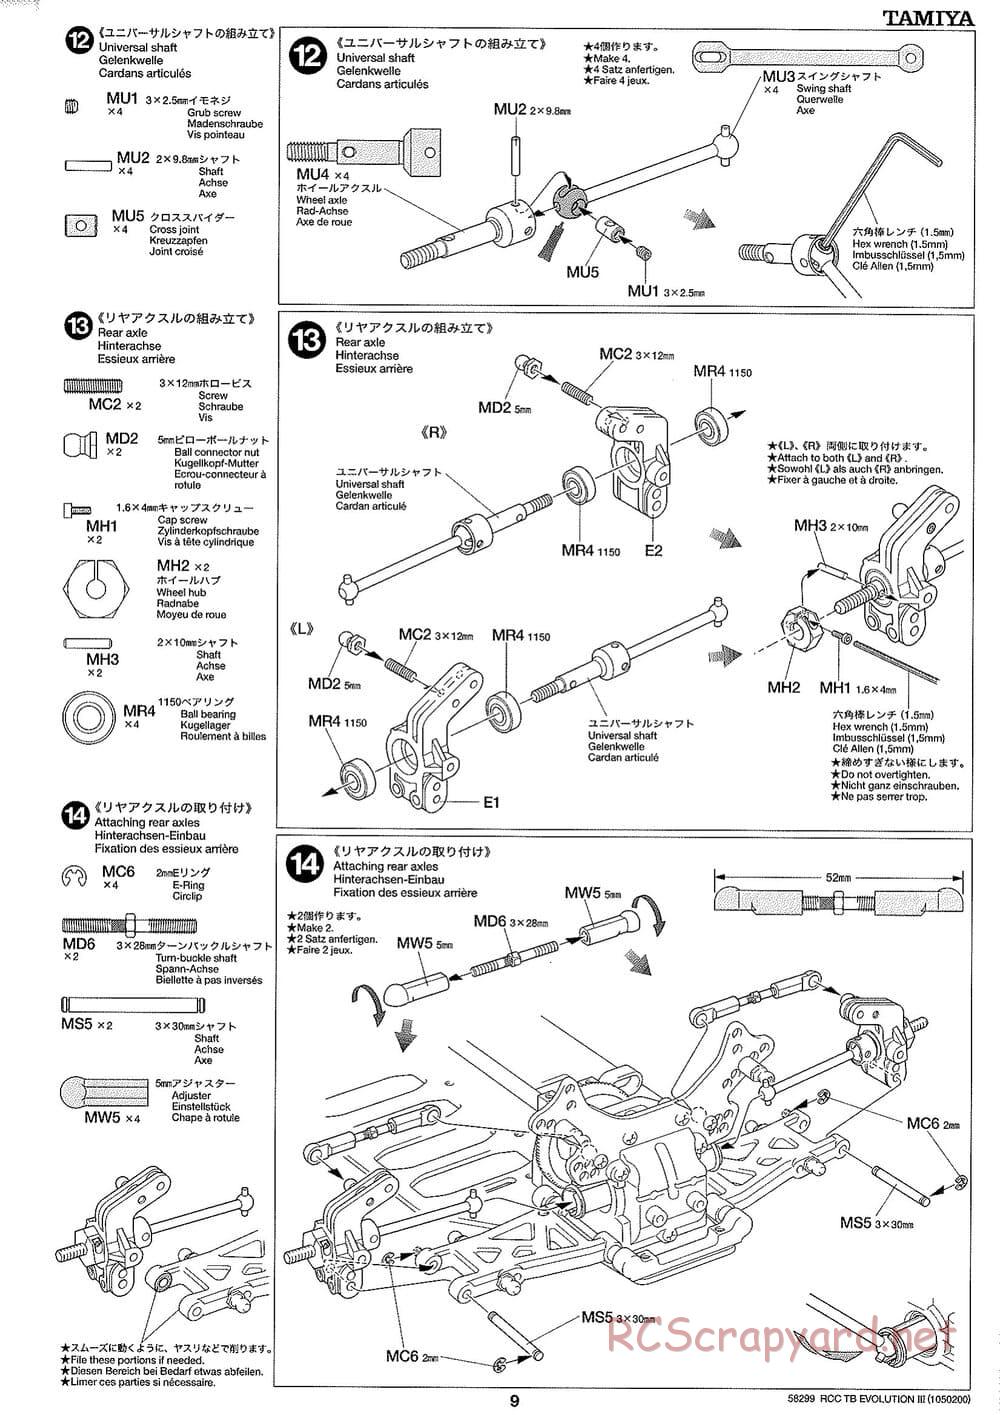 Tamiya - TB Evolution III Chassis - Manual - Page 10